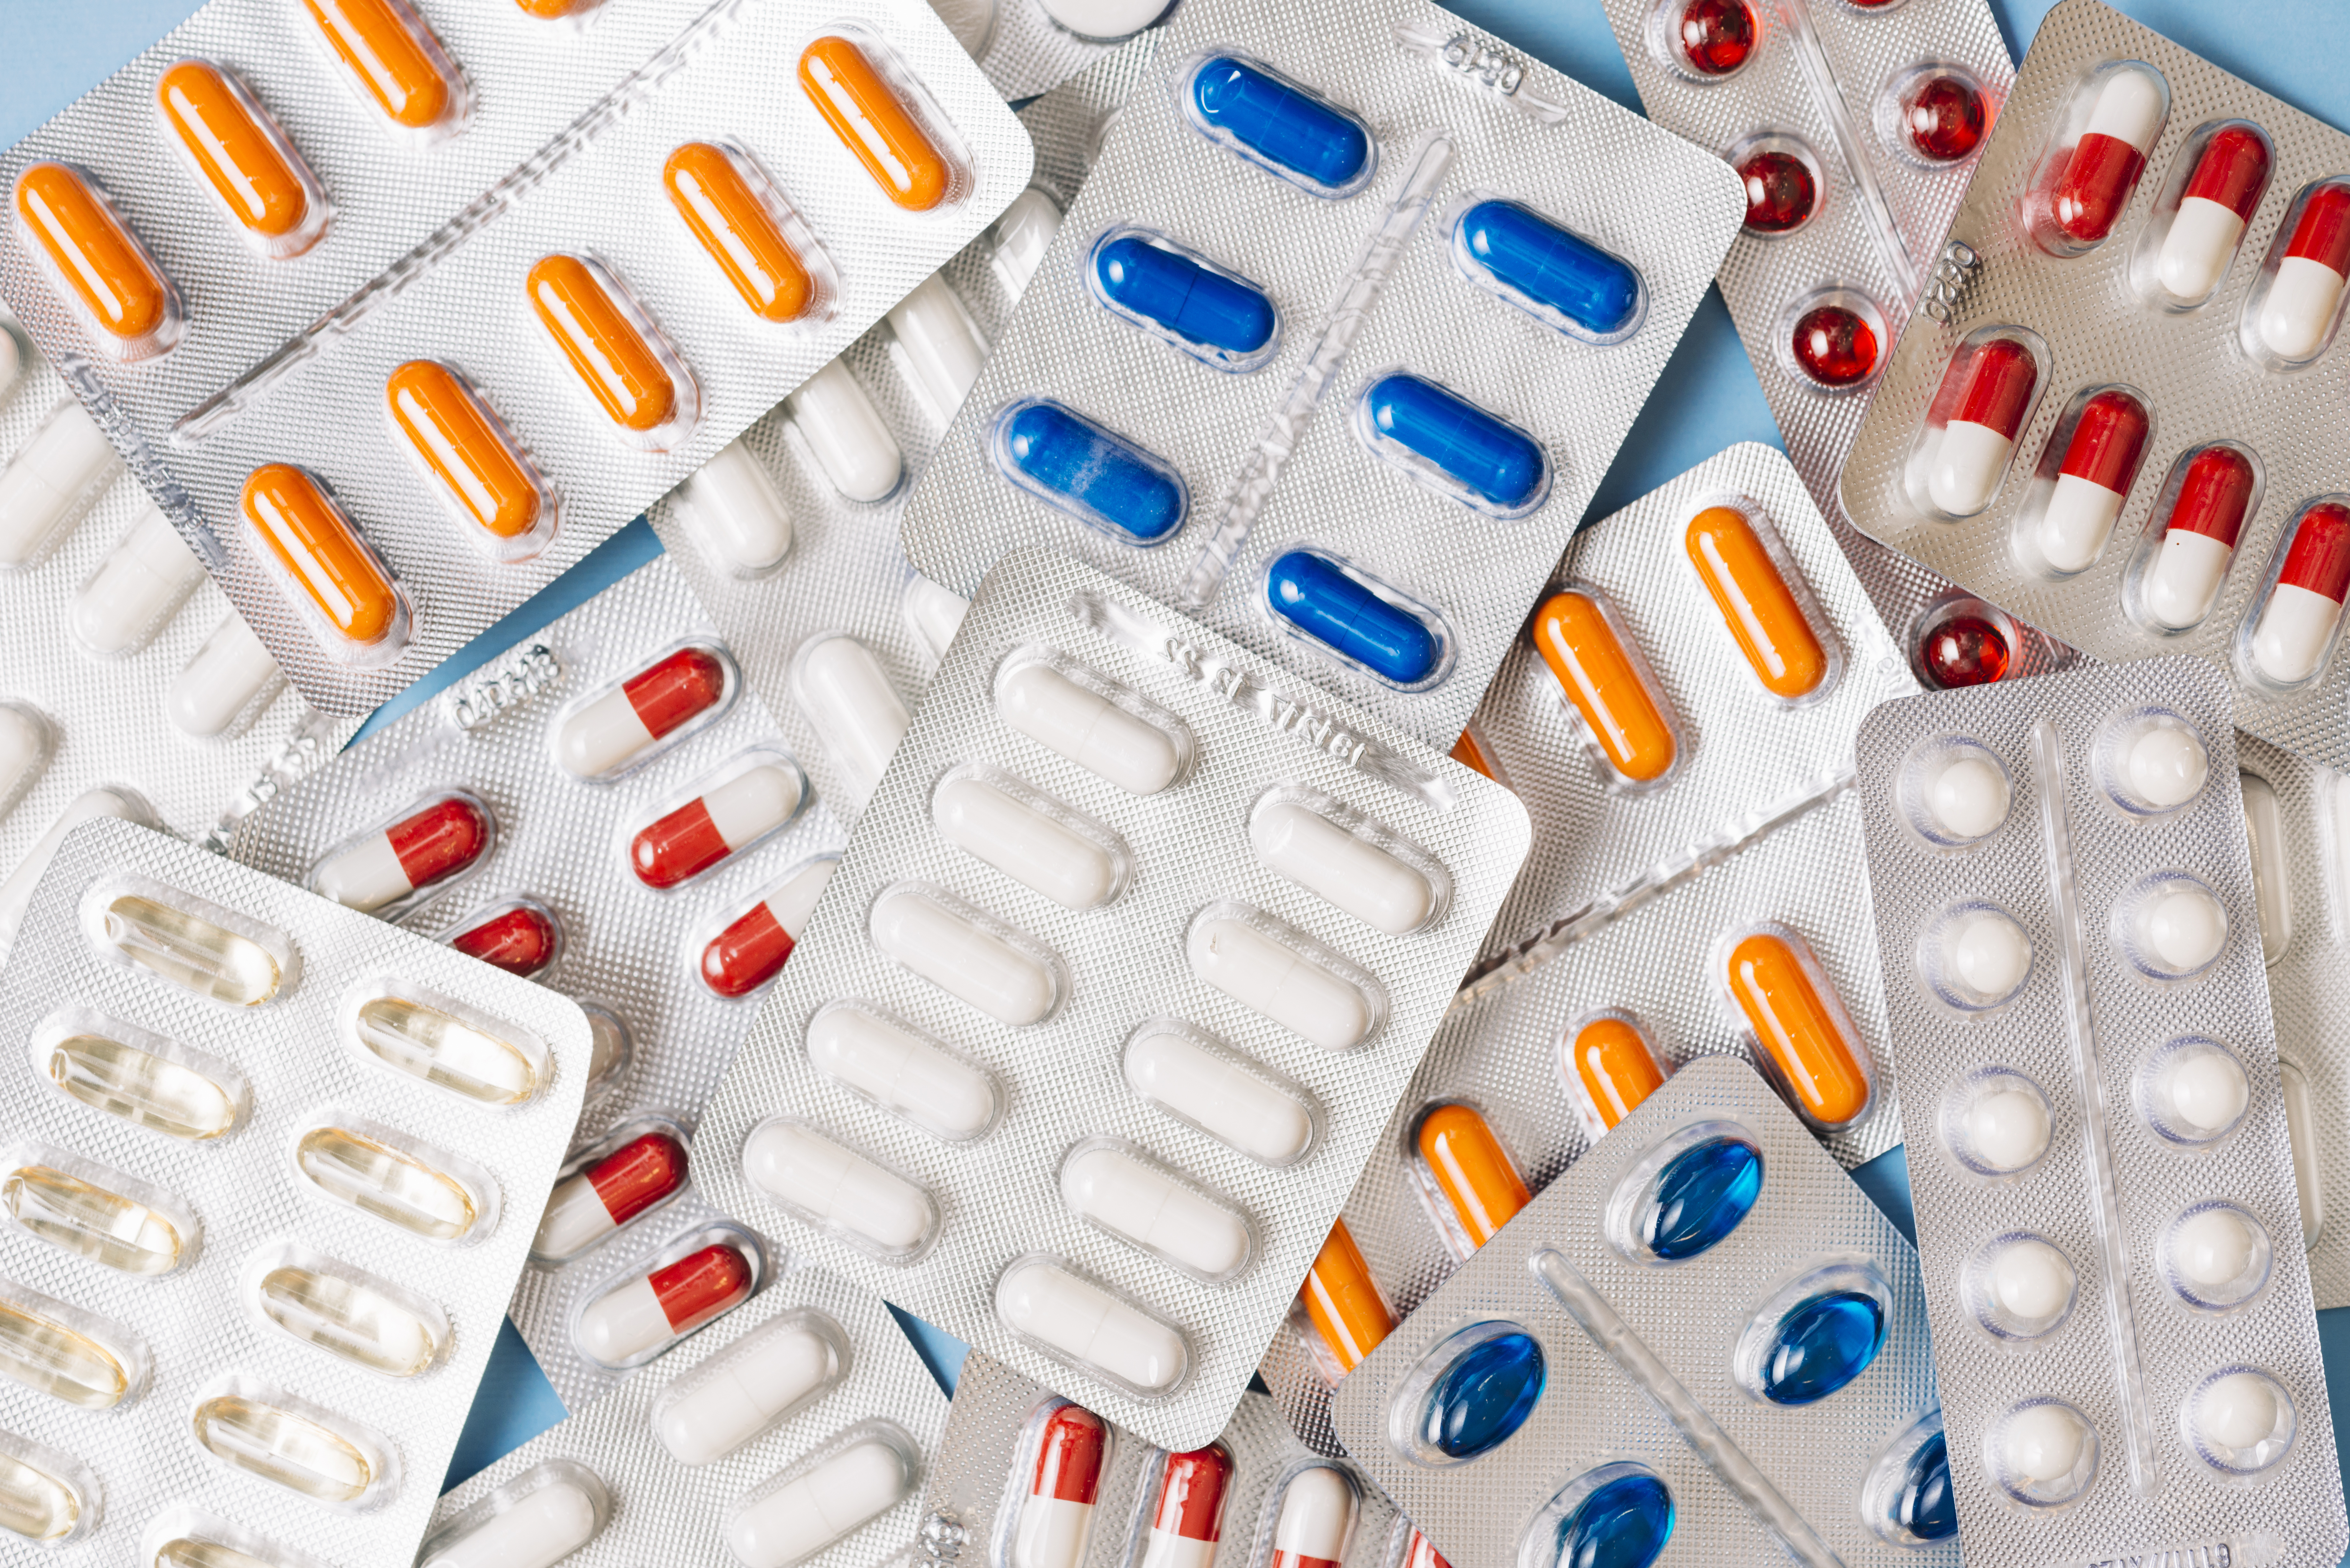 ¿Cómo se administra el Ibuprofeno?